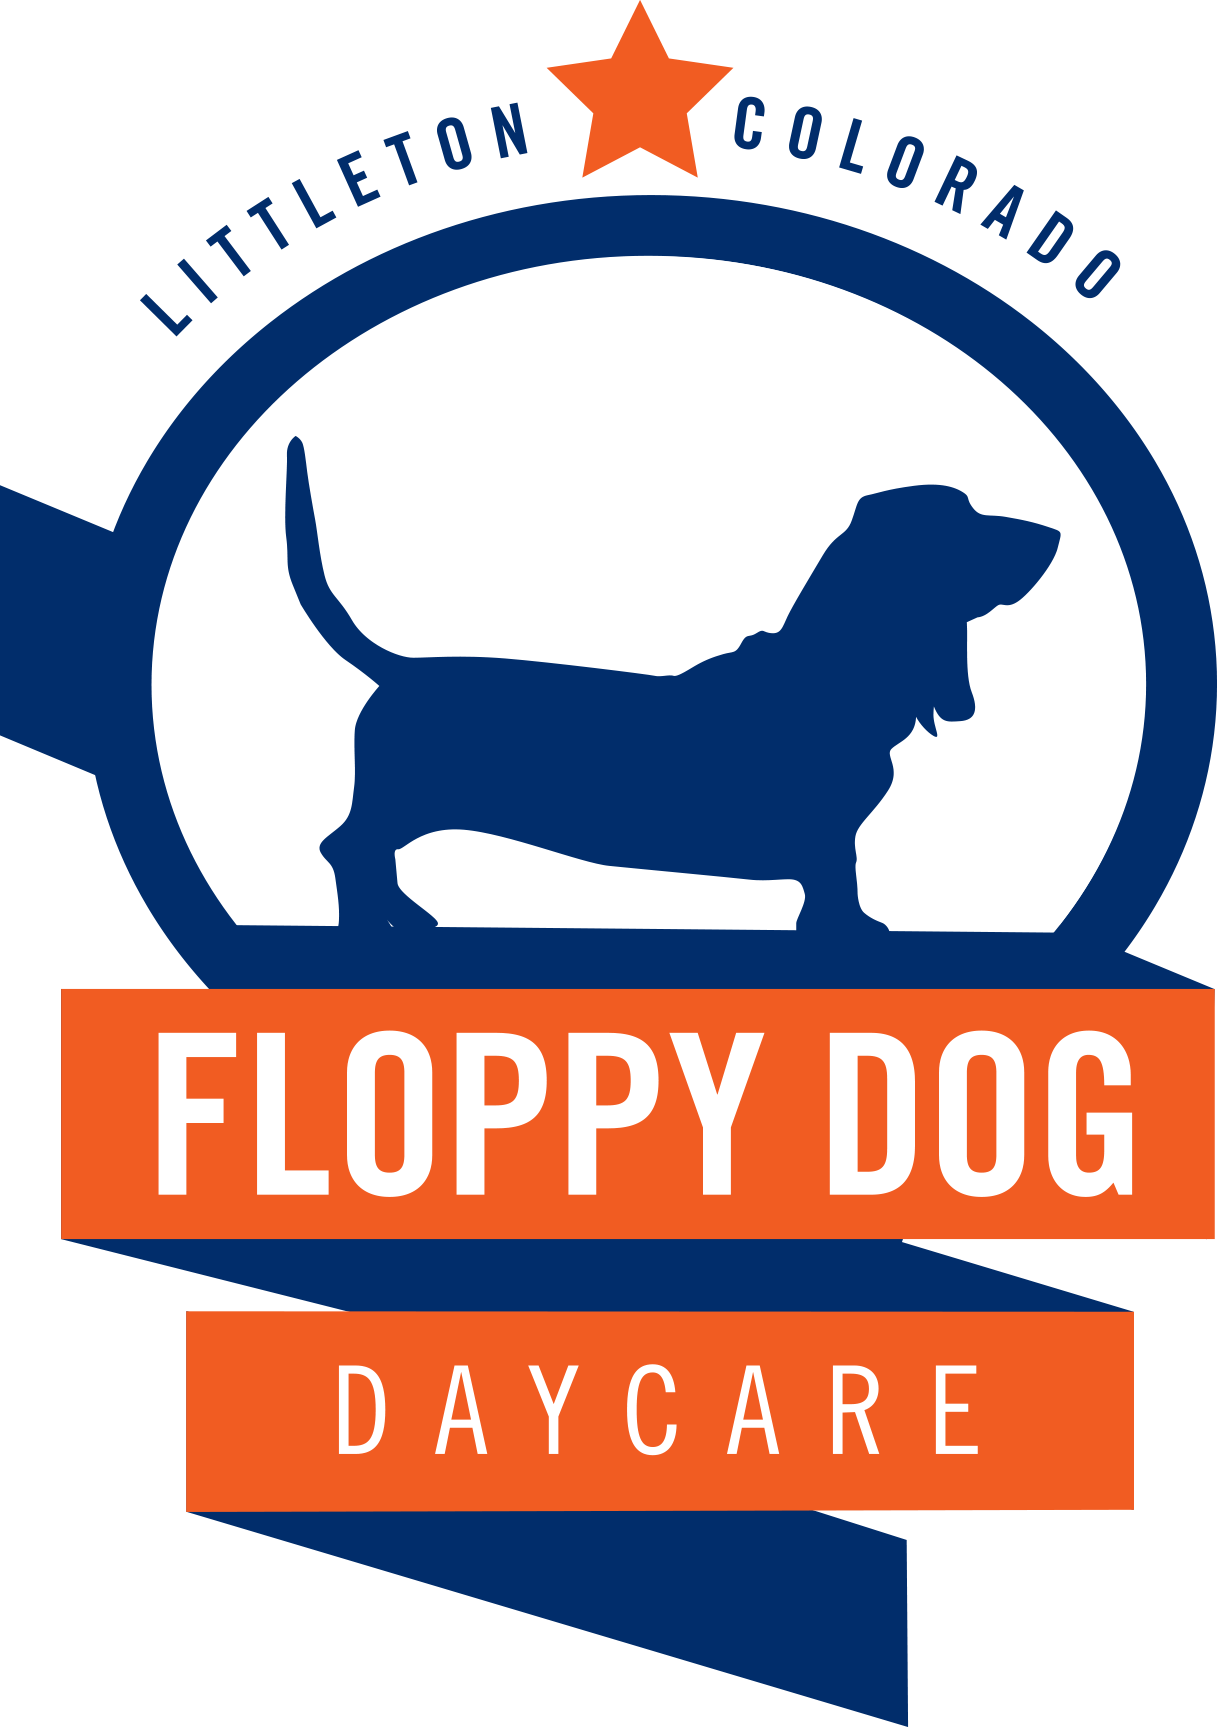 Floppy Dog Daycare (1217x1727)